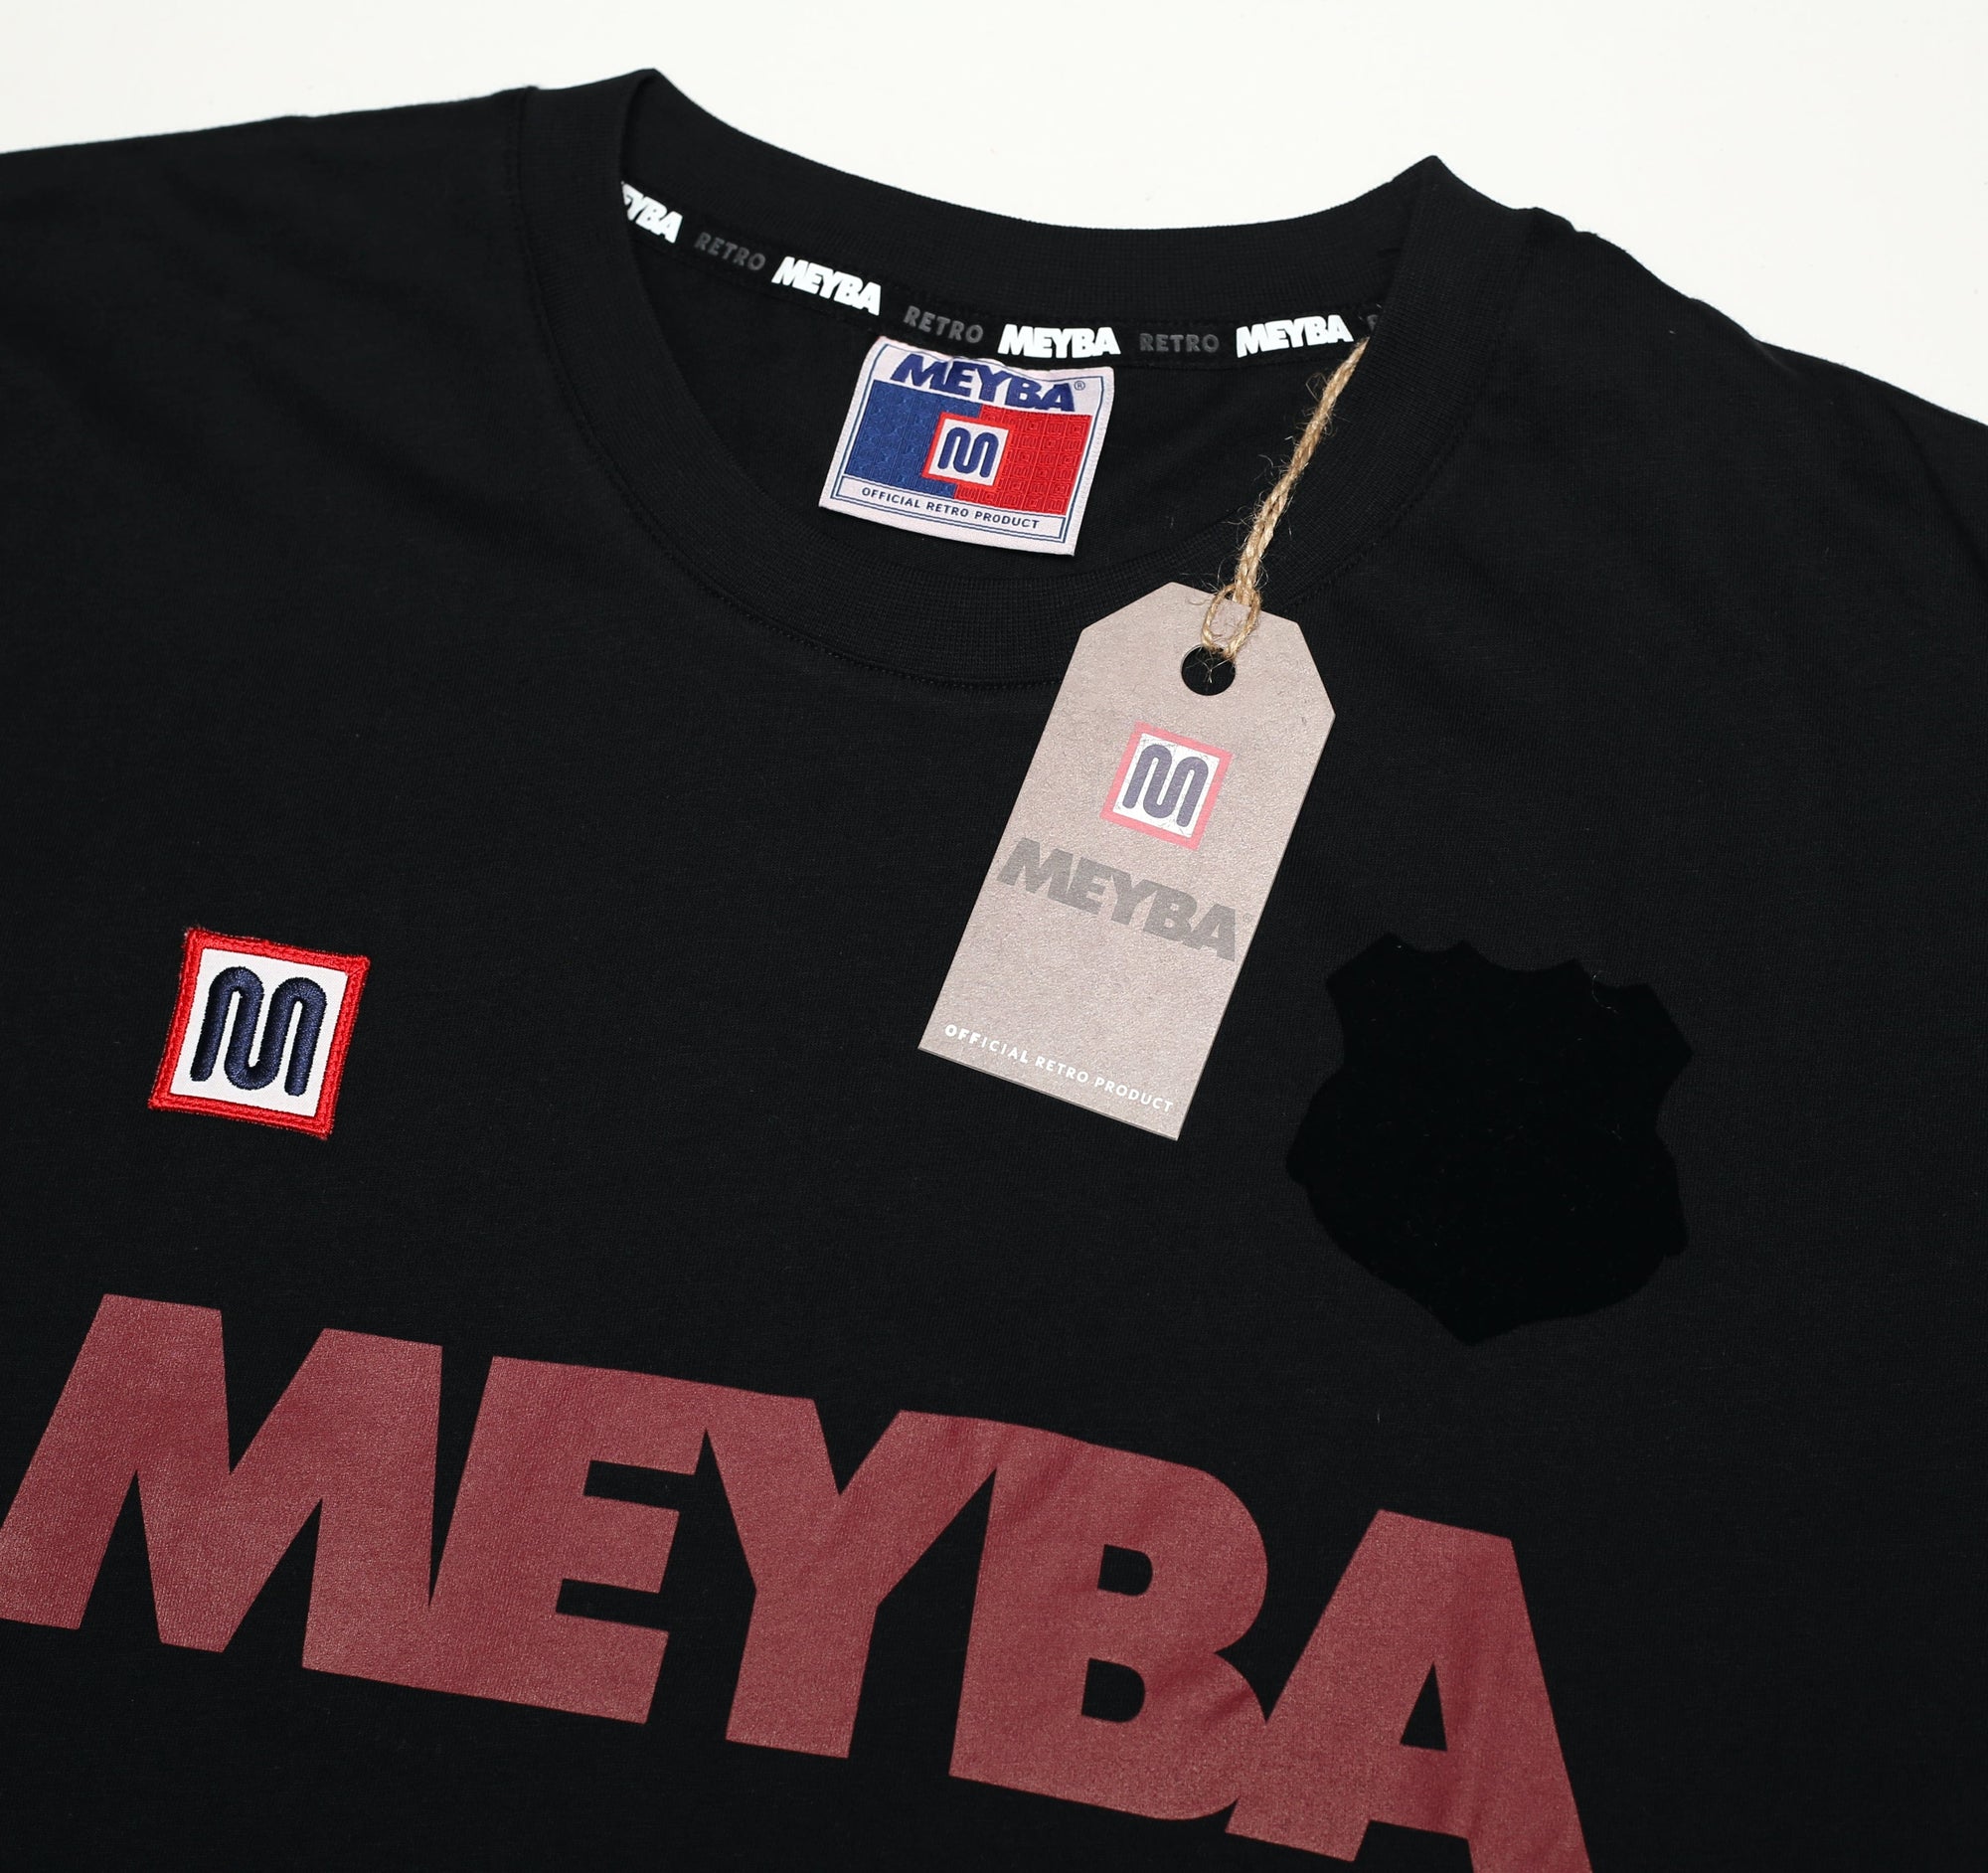 Meyba Tee Shirt